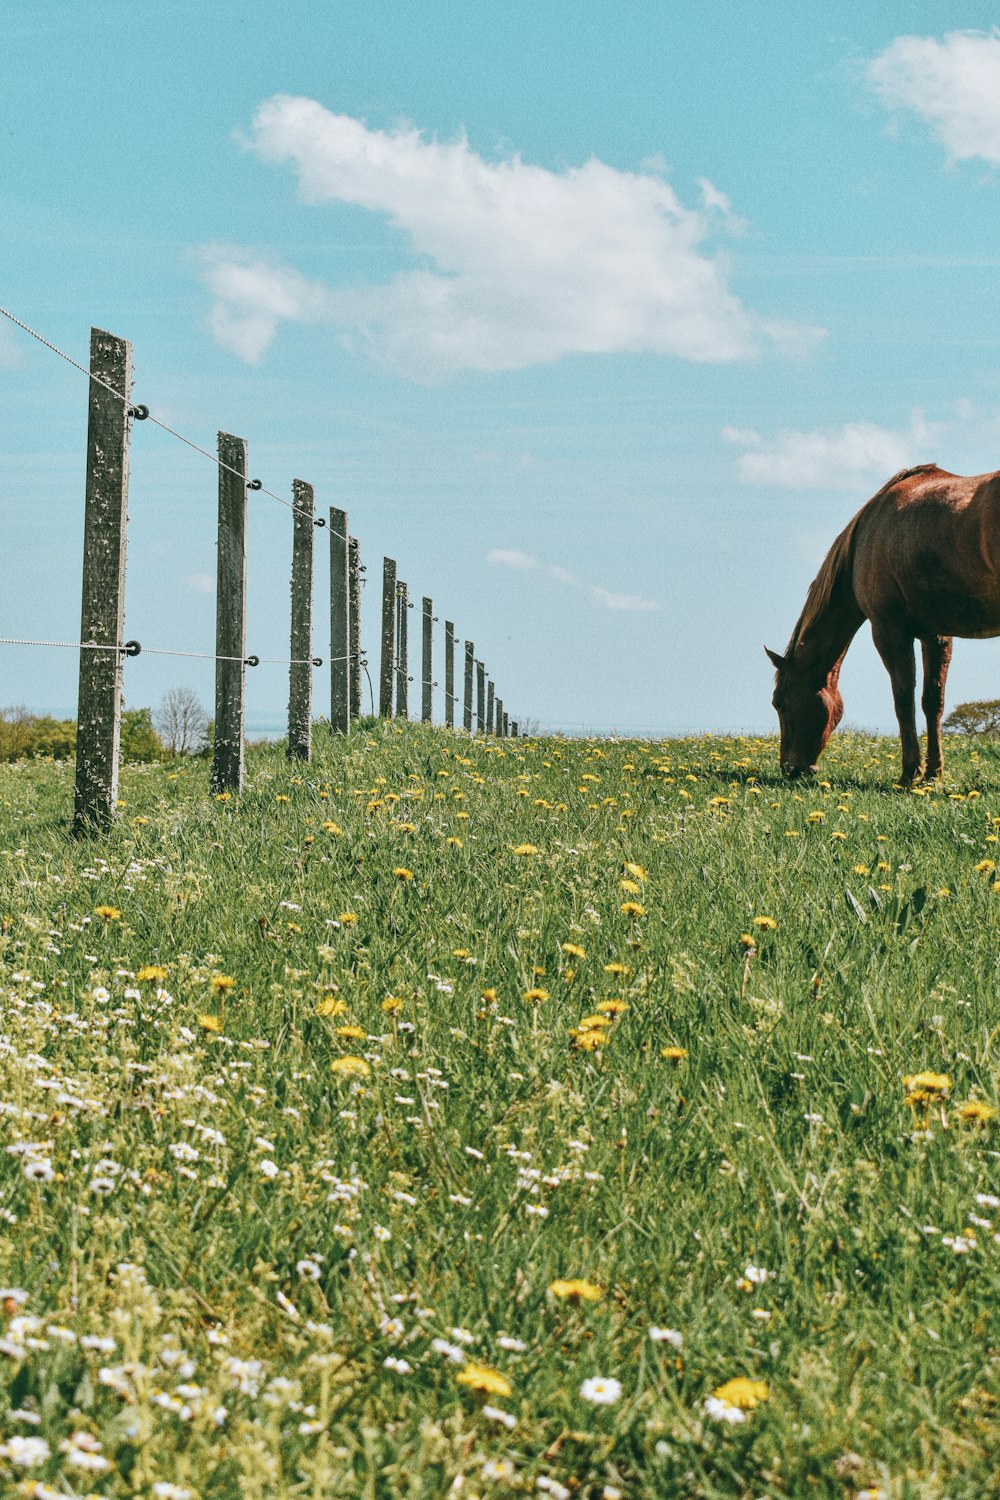 Más de 30,000 fotos de rancho | Descargar imágenes gratis en Unsplash